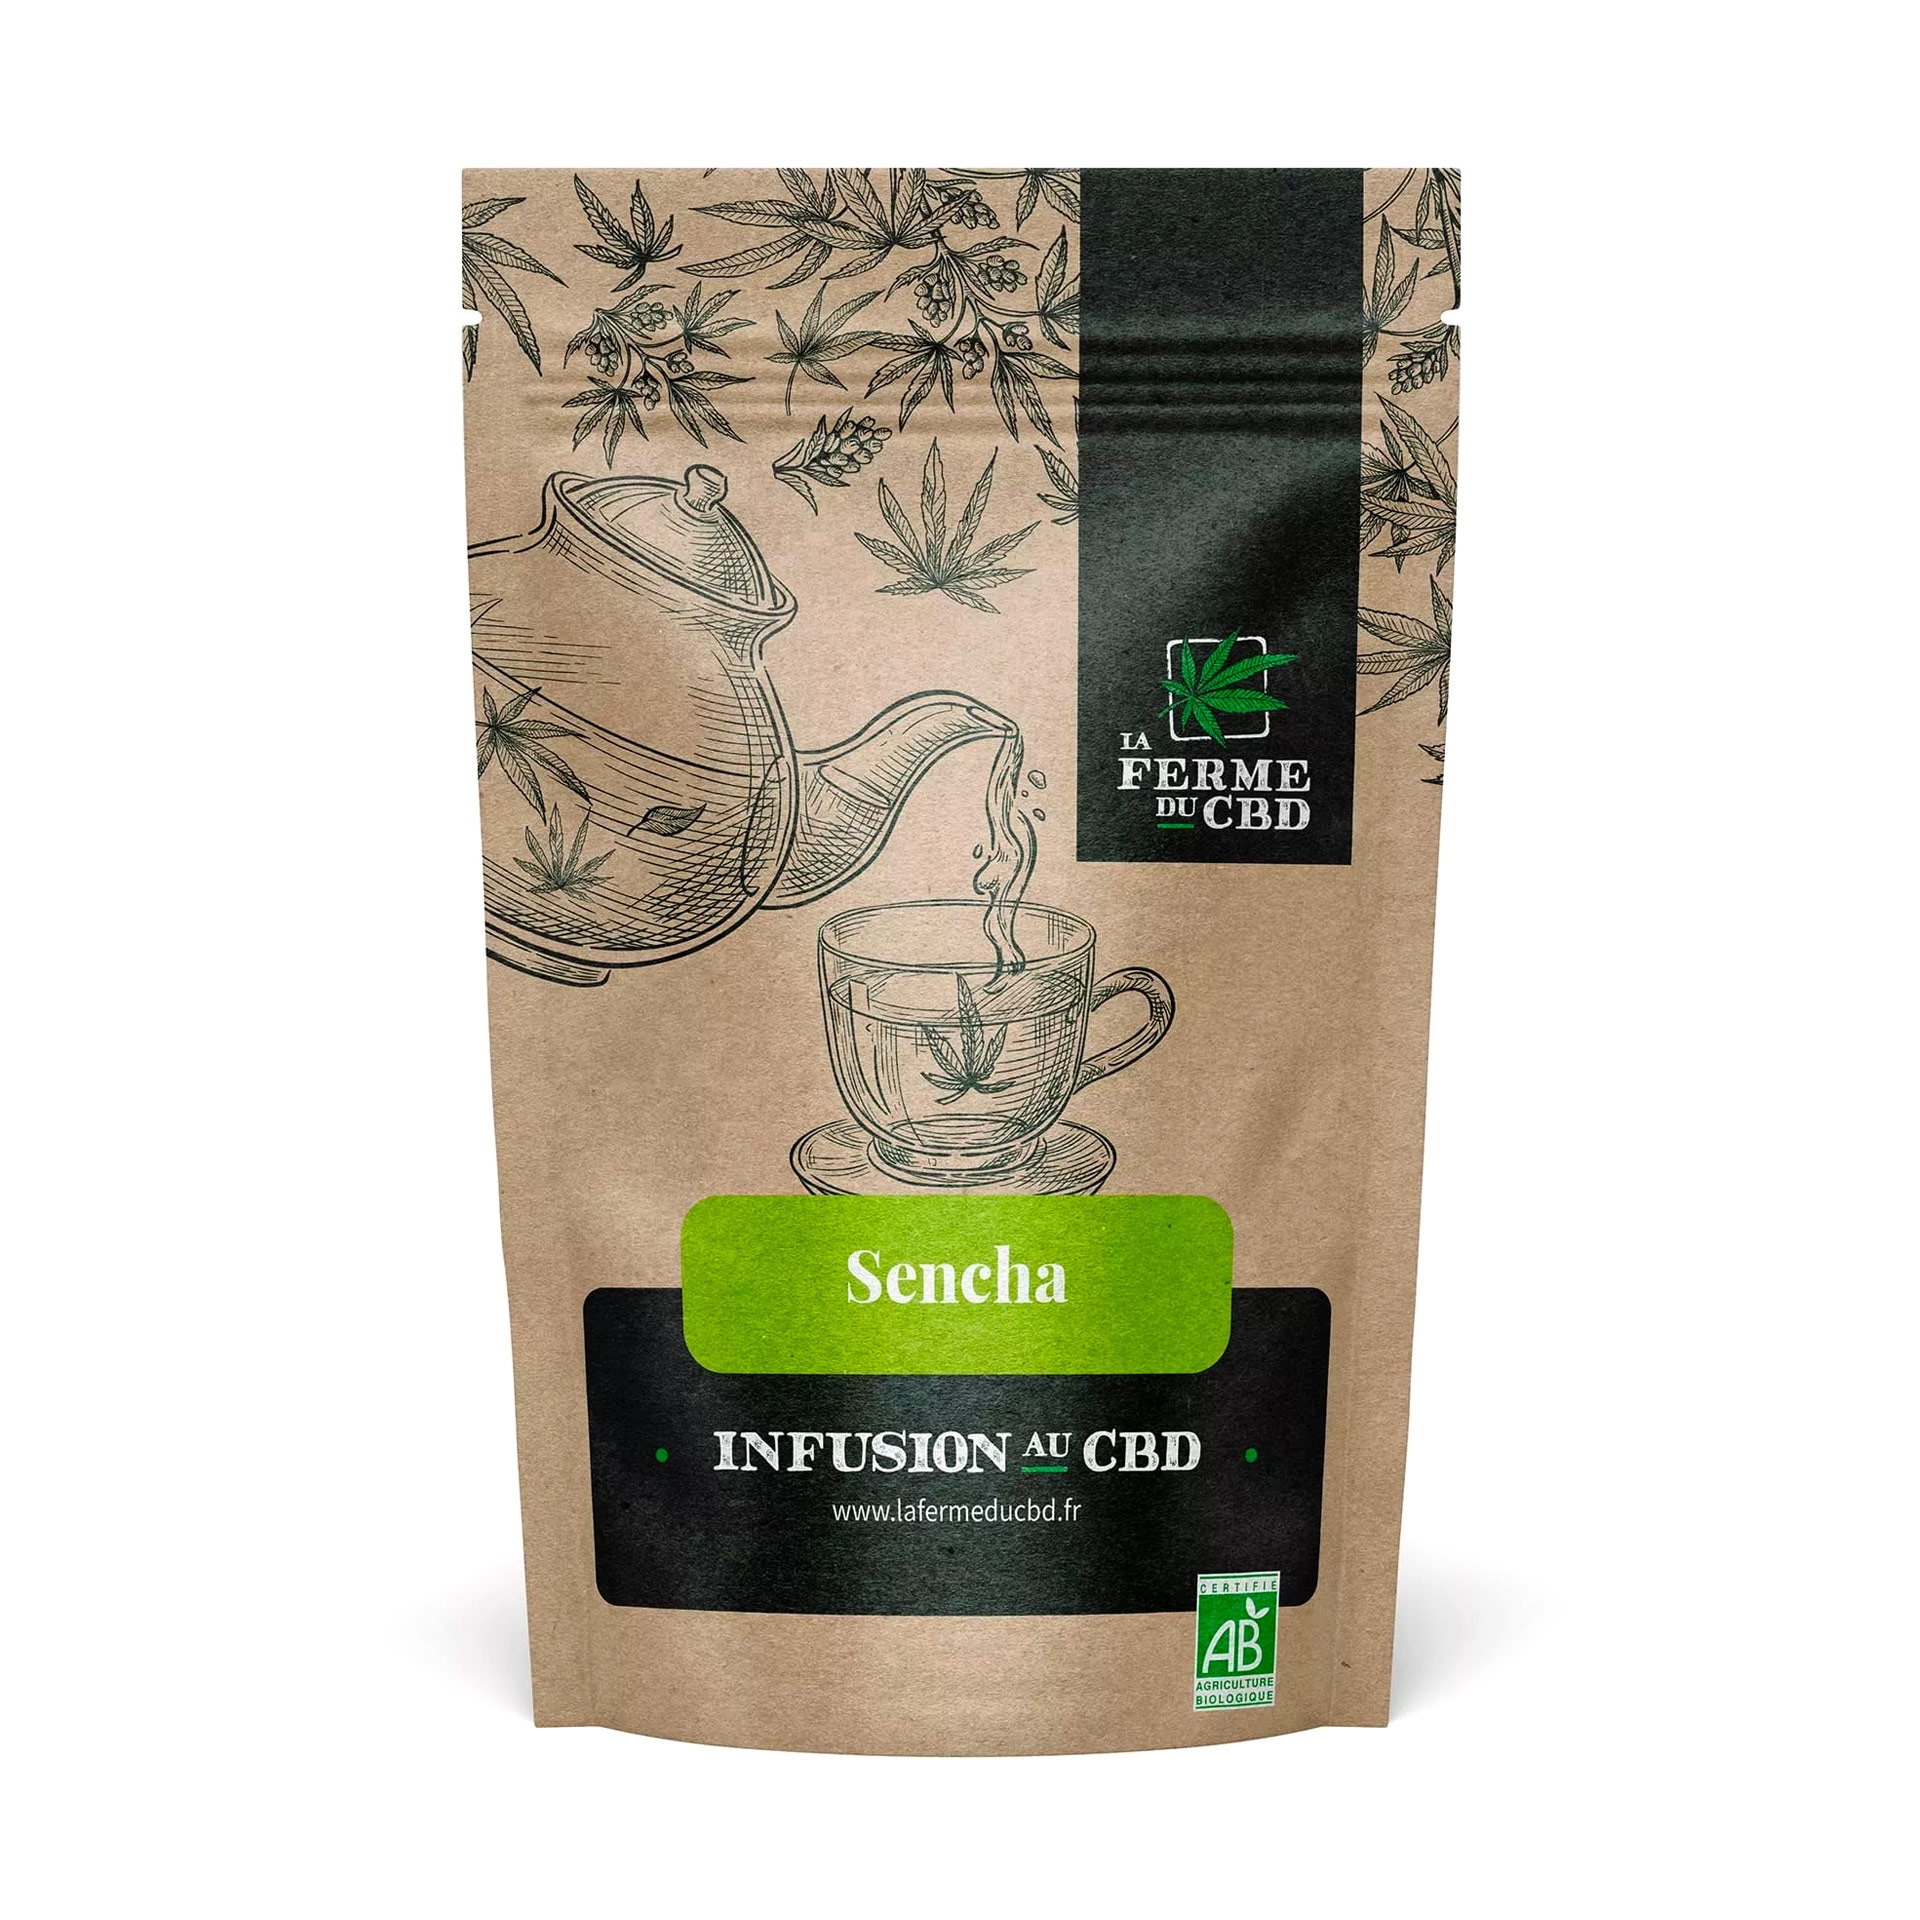 Sachet pour infusion CBD avec thé vert Sencha "La Ferme du CBD"